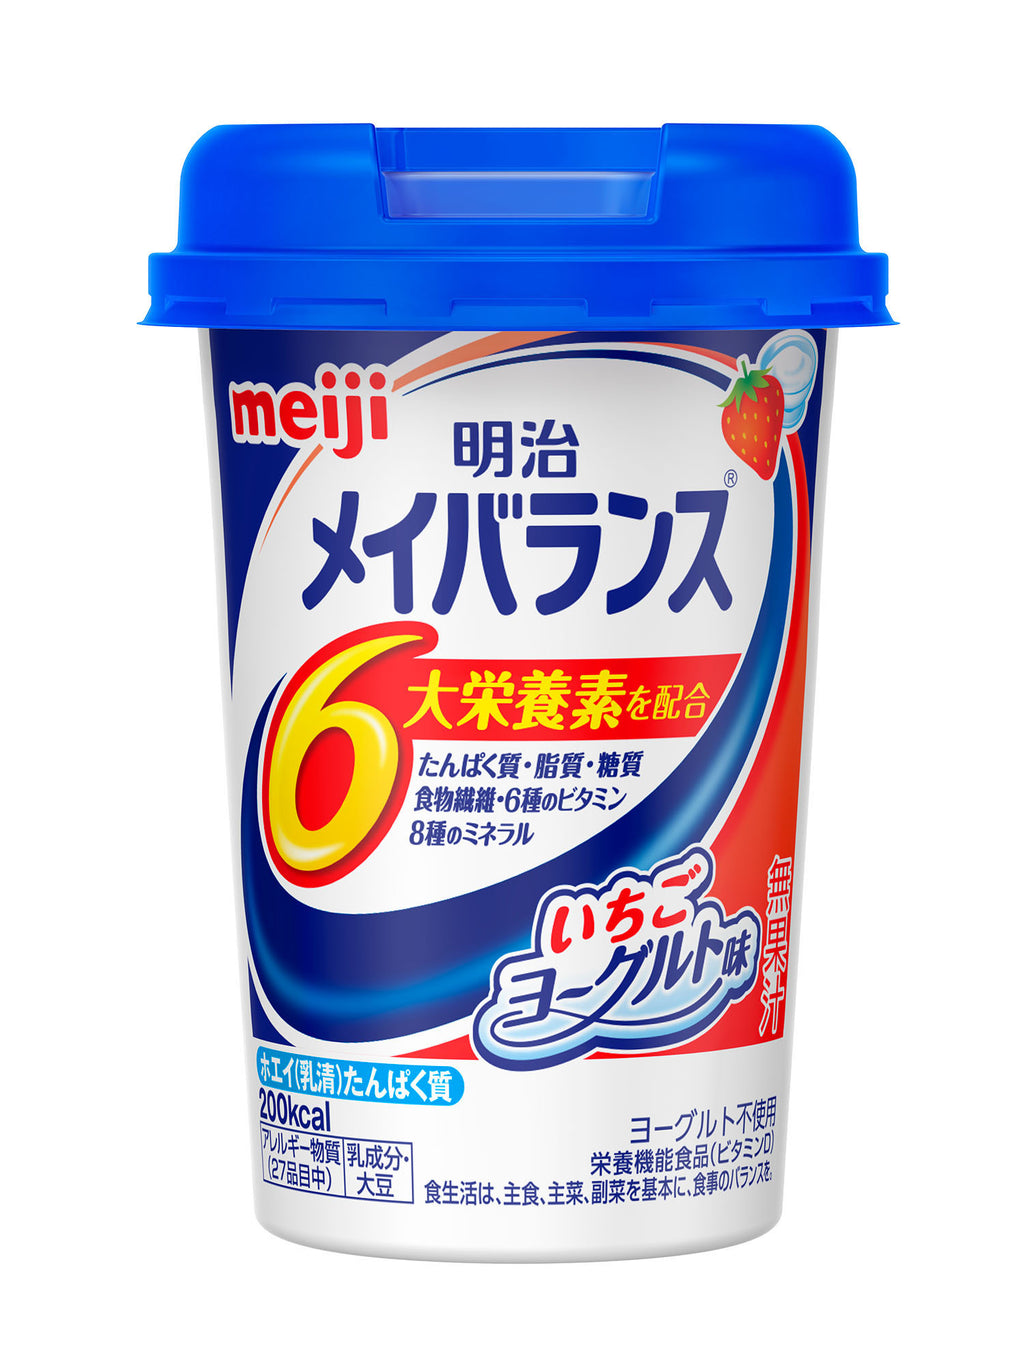 明治メイバランスMiniカップ いちごヨーグルト味【125ml×12本